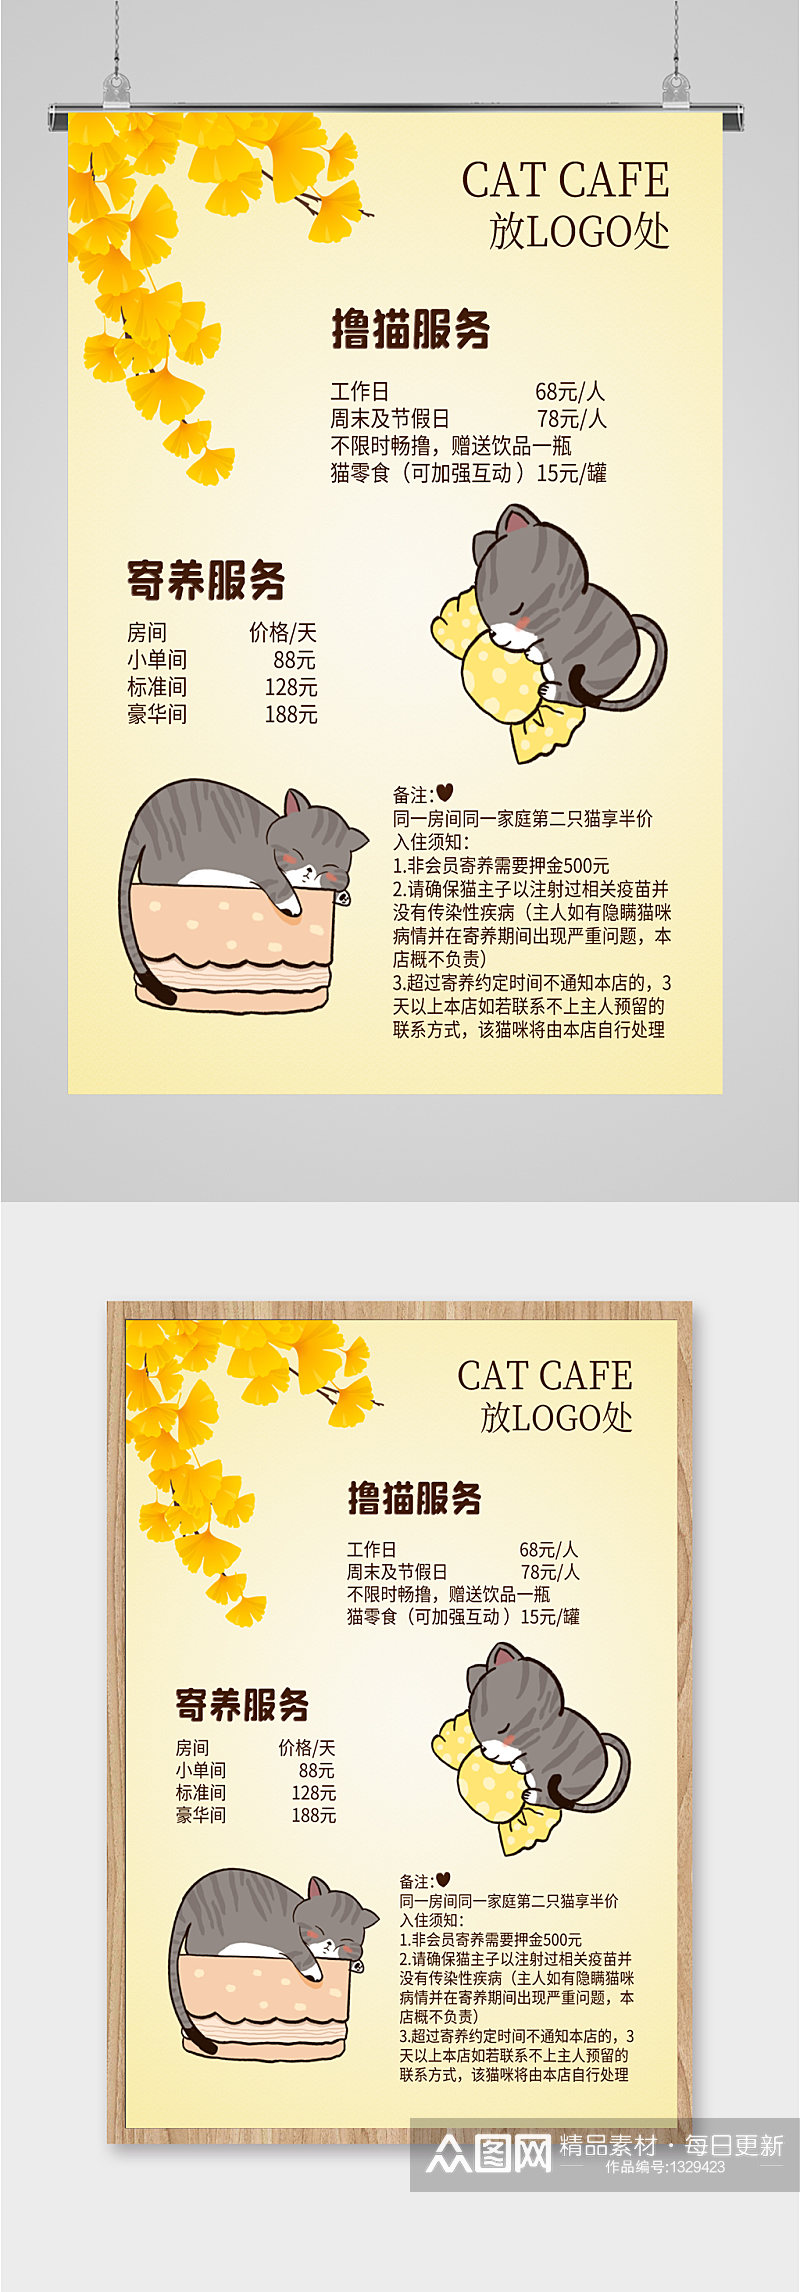 撸猫馆撸猫服务海报素材